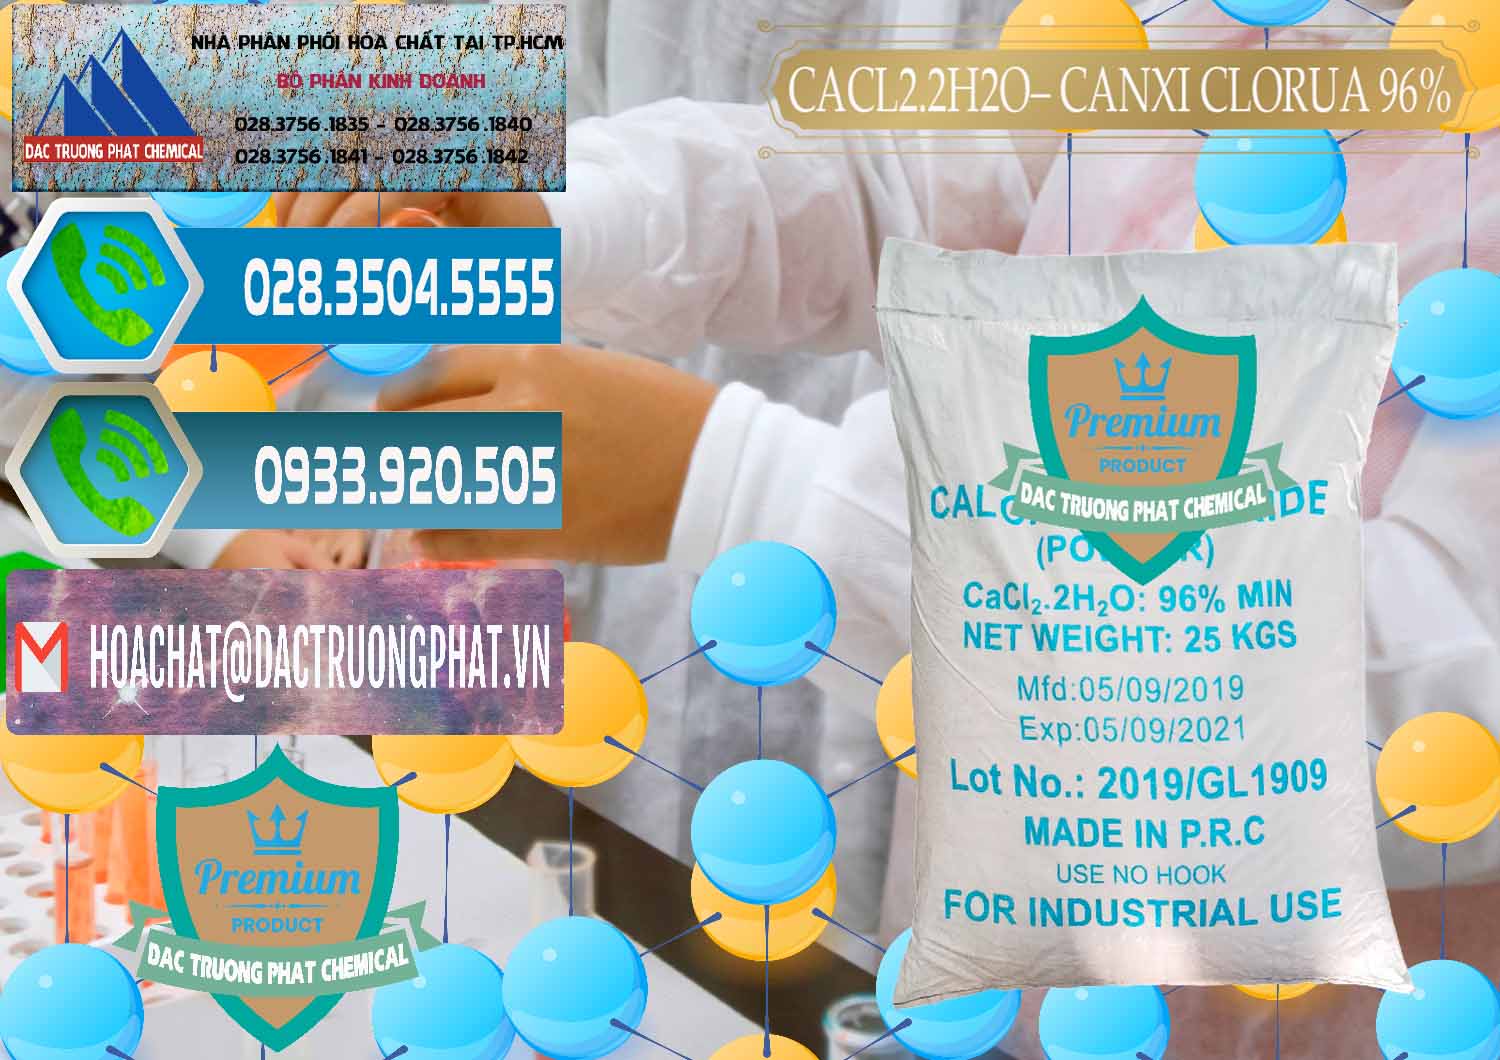 Cty chuyên bán ( cung cấp ) CaCl2 – Canxi Clorua 96% Logo Kim Cương Trung Quốc China - 0040 - Cty cung cấp ( phân phối ) hóa chất tại TP.HCM - congtyhoachat.net